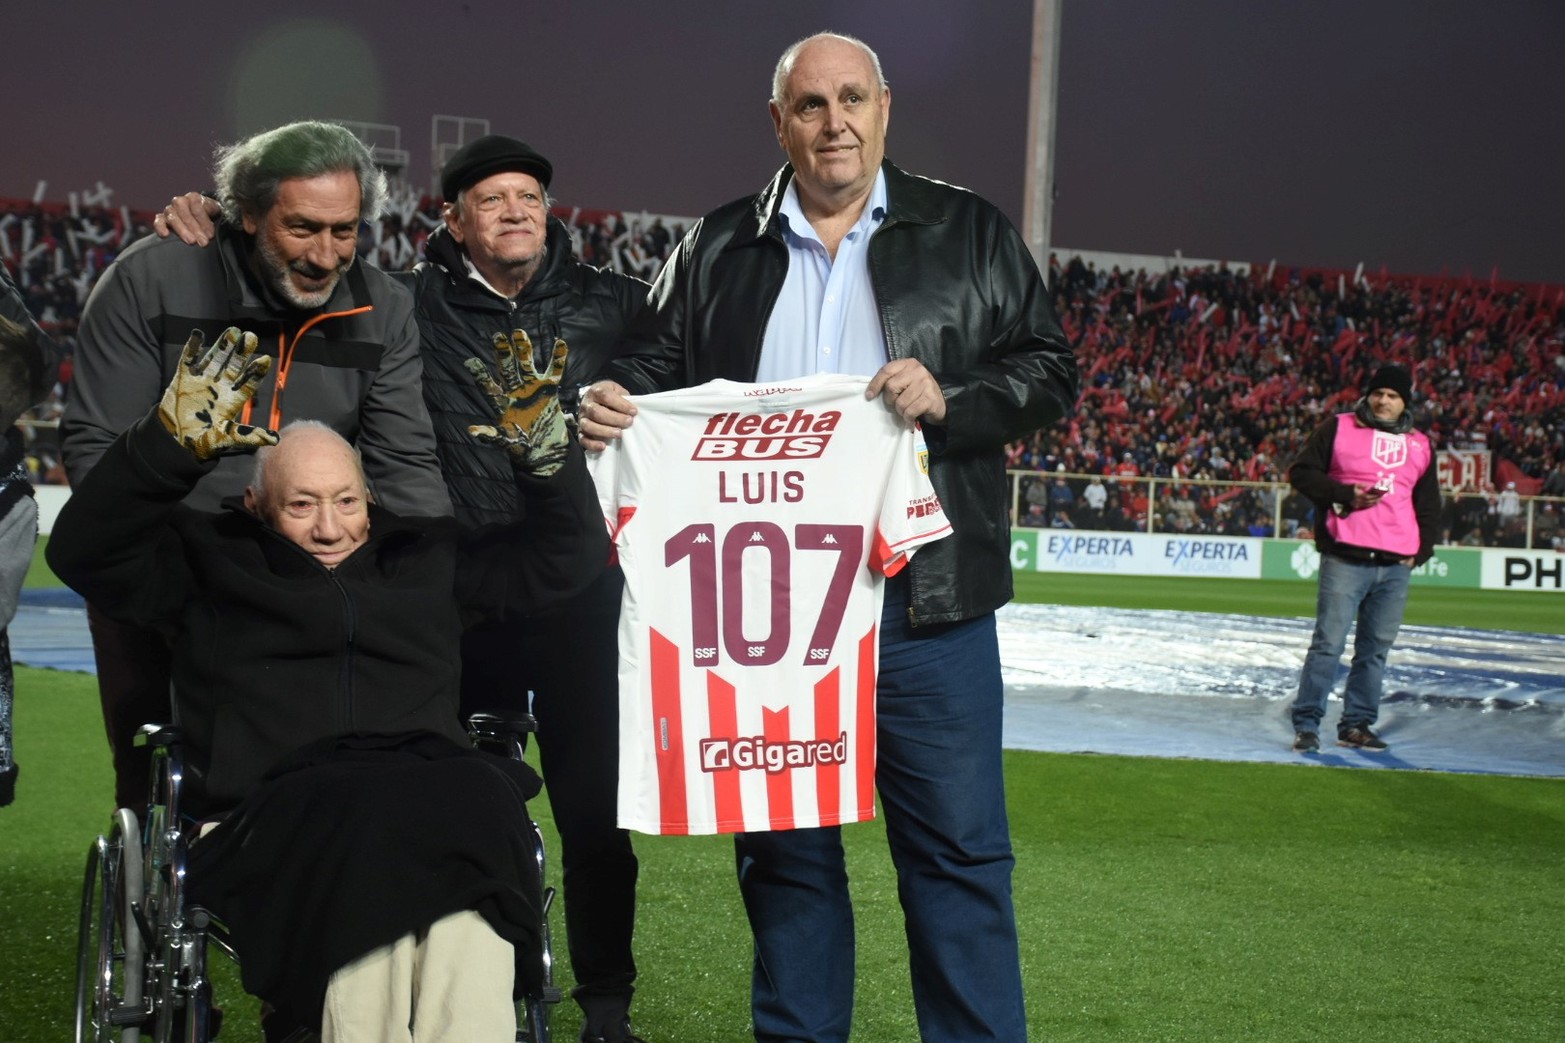 Luis Acosta, socio vitalicio de Unión de 107 años, fue reconocido en el campo de juego por el presidente Spahn. Foto: Manuel Fabatía